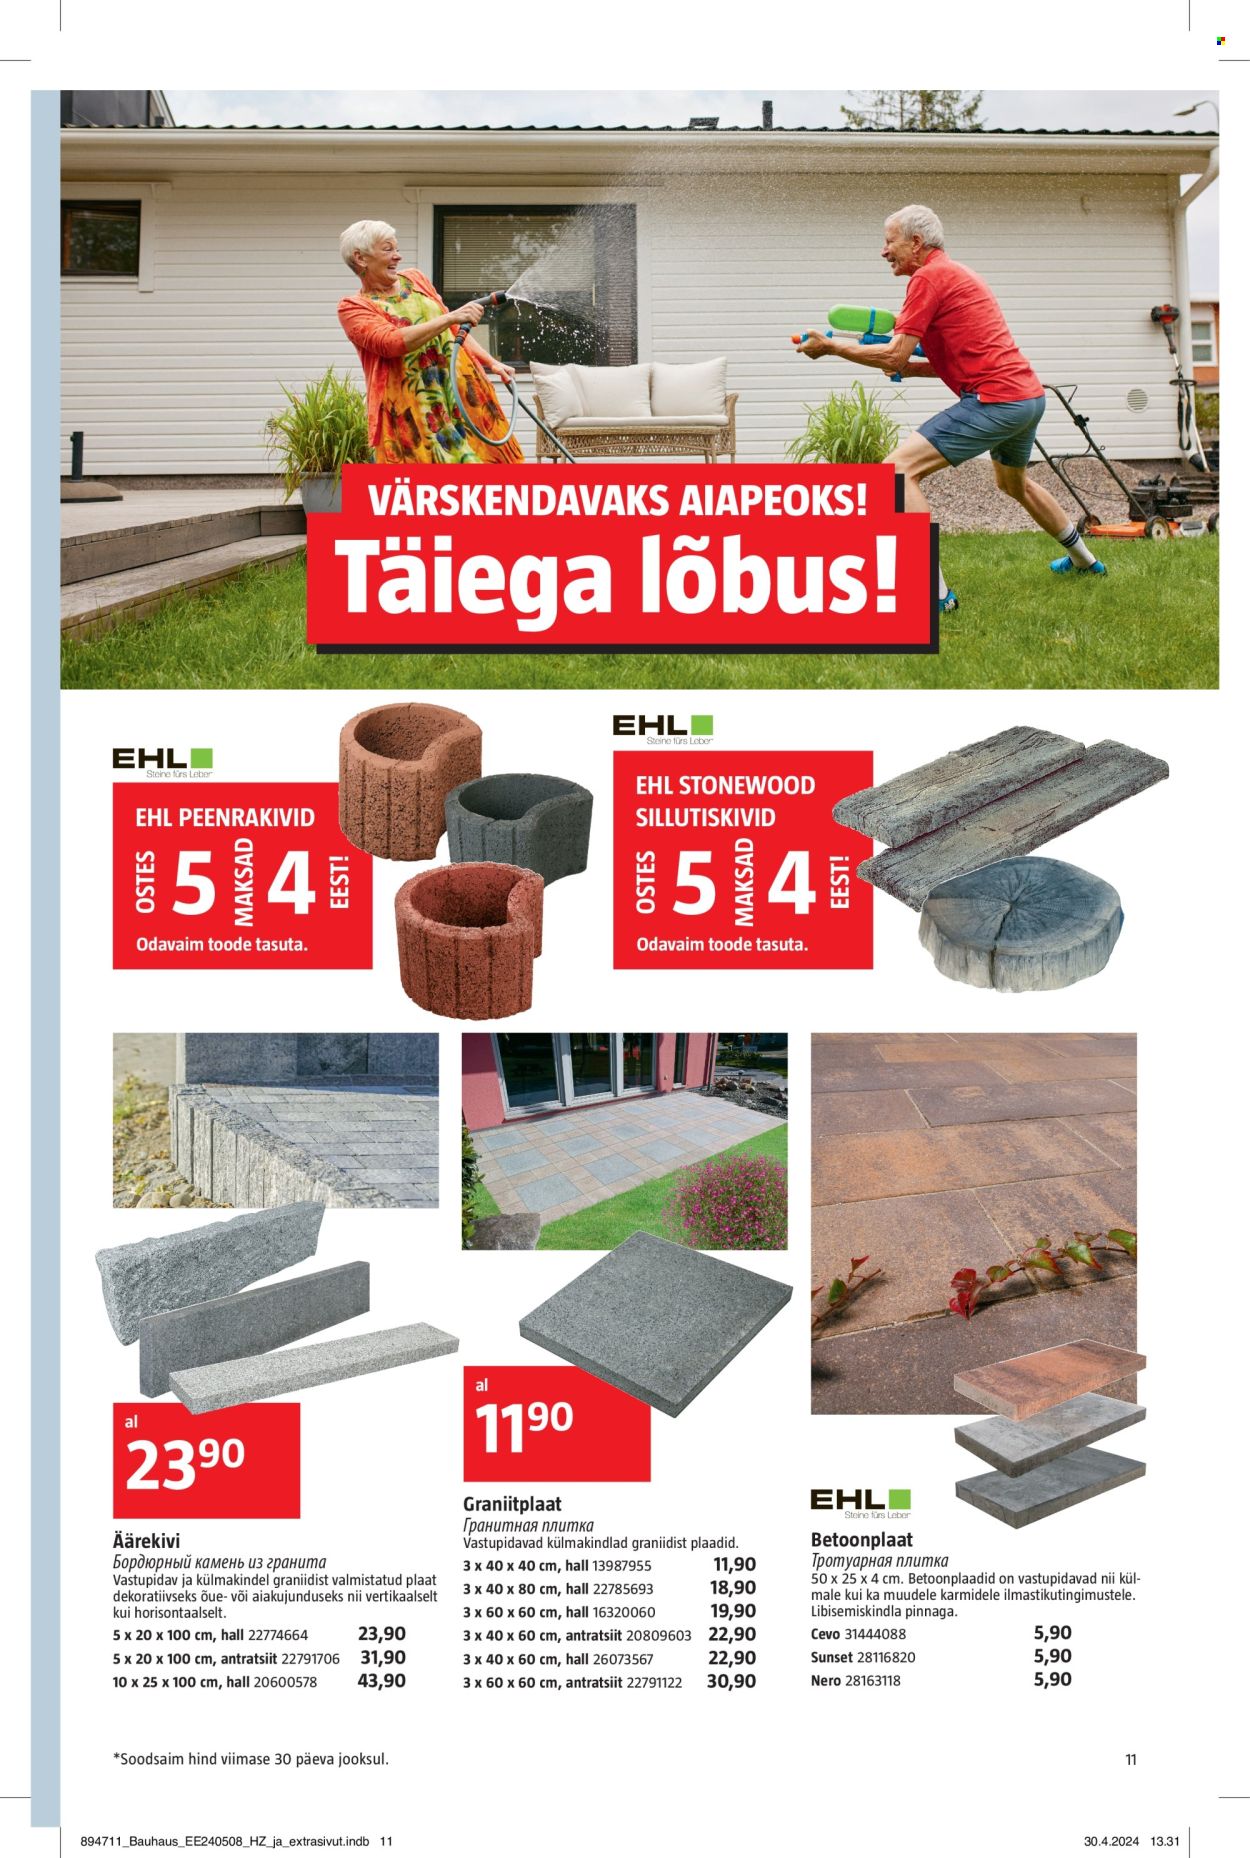 bauhaus - Bauhaus kliendileht - page: 11